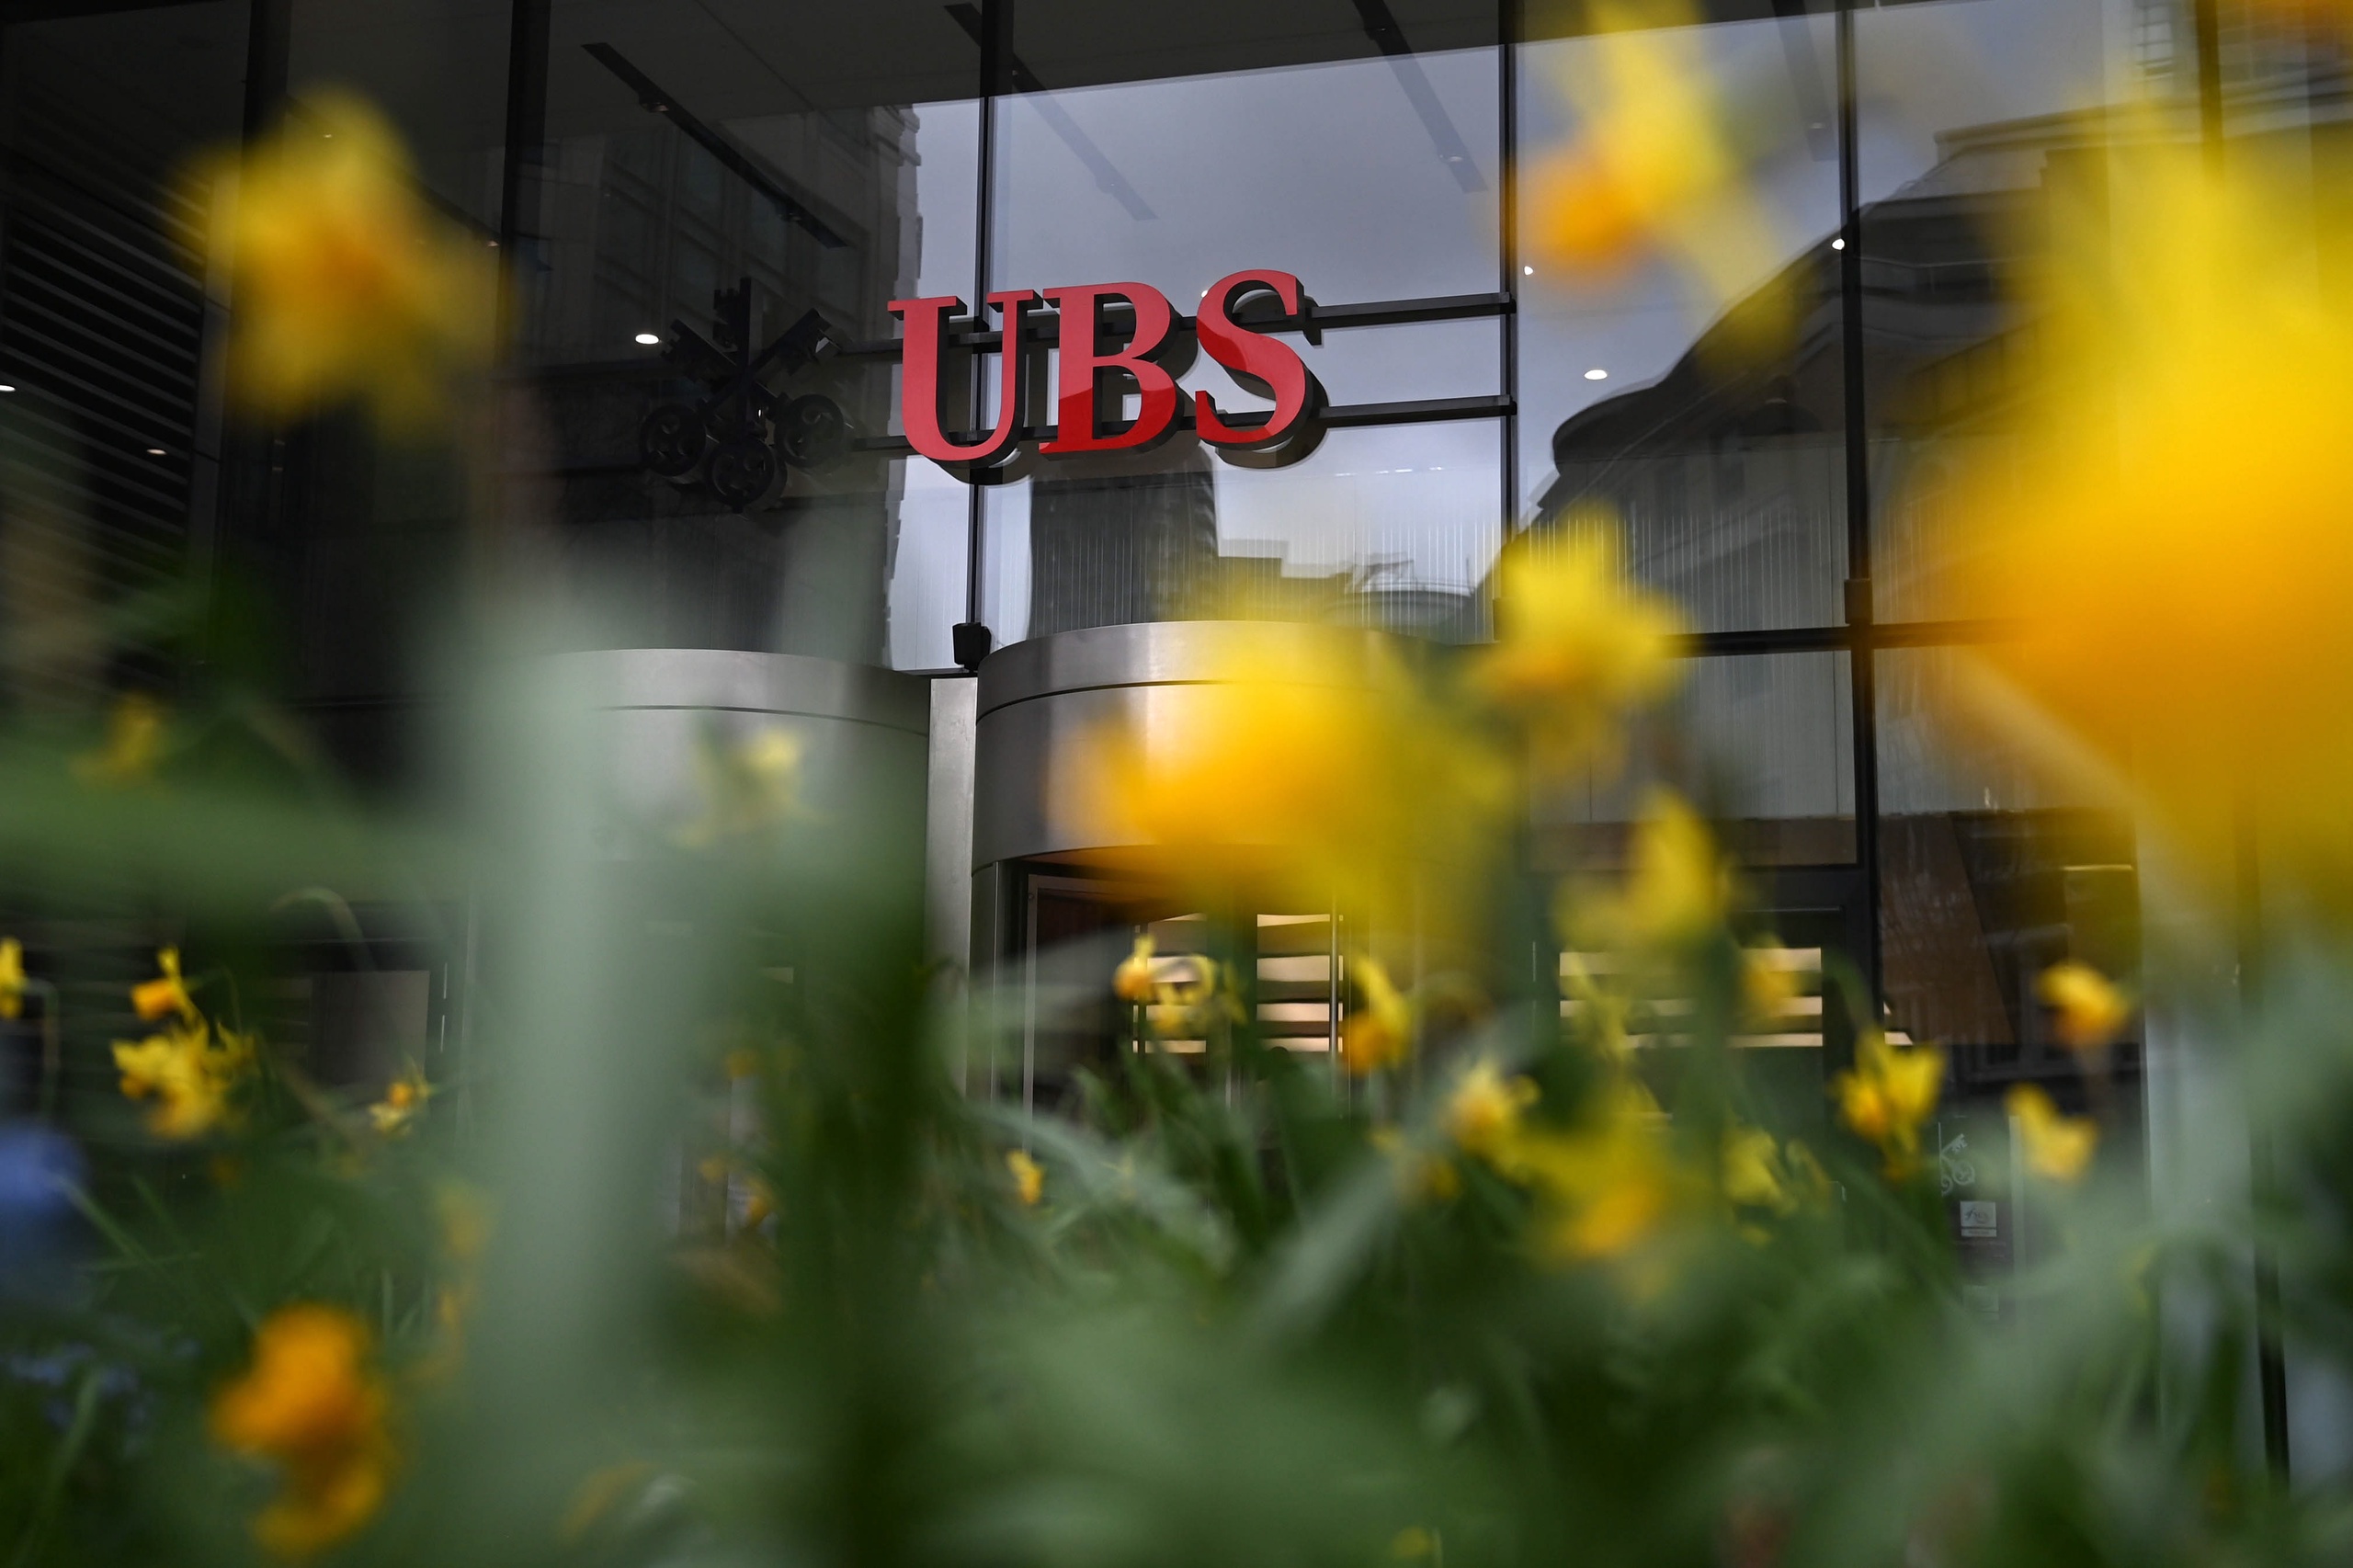 De overname van de Zwitserse bank Credit Suisse door landgenoot UBS is volgens de Zwitserse bondspresident Alain Berset 'de beste oplossing voor herstel van het vertrouwen in financiële markten', al is de grootste partij van het Zwitserse parlement het daar niet mee eens. Die zegt juist dat de nieuwe fusiebank te groot is.